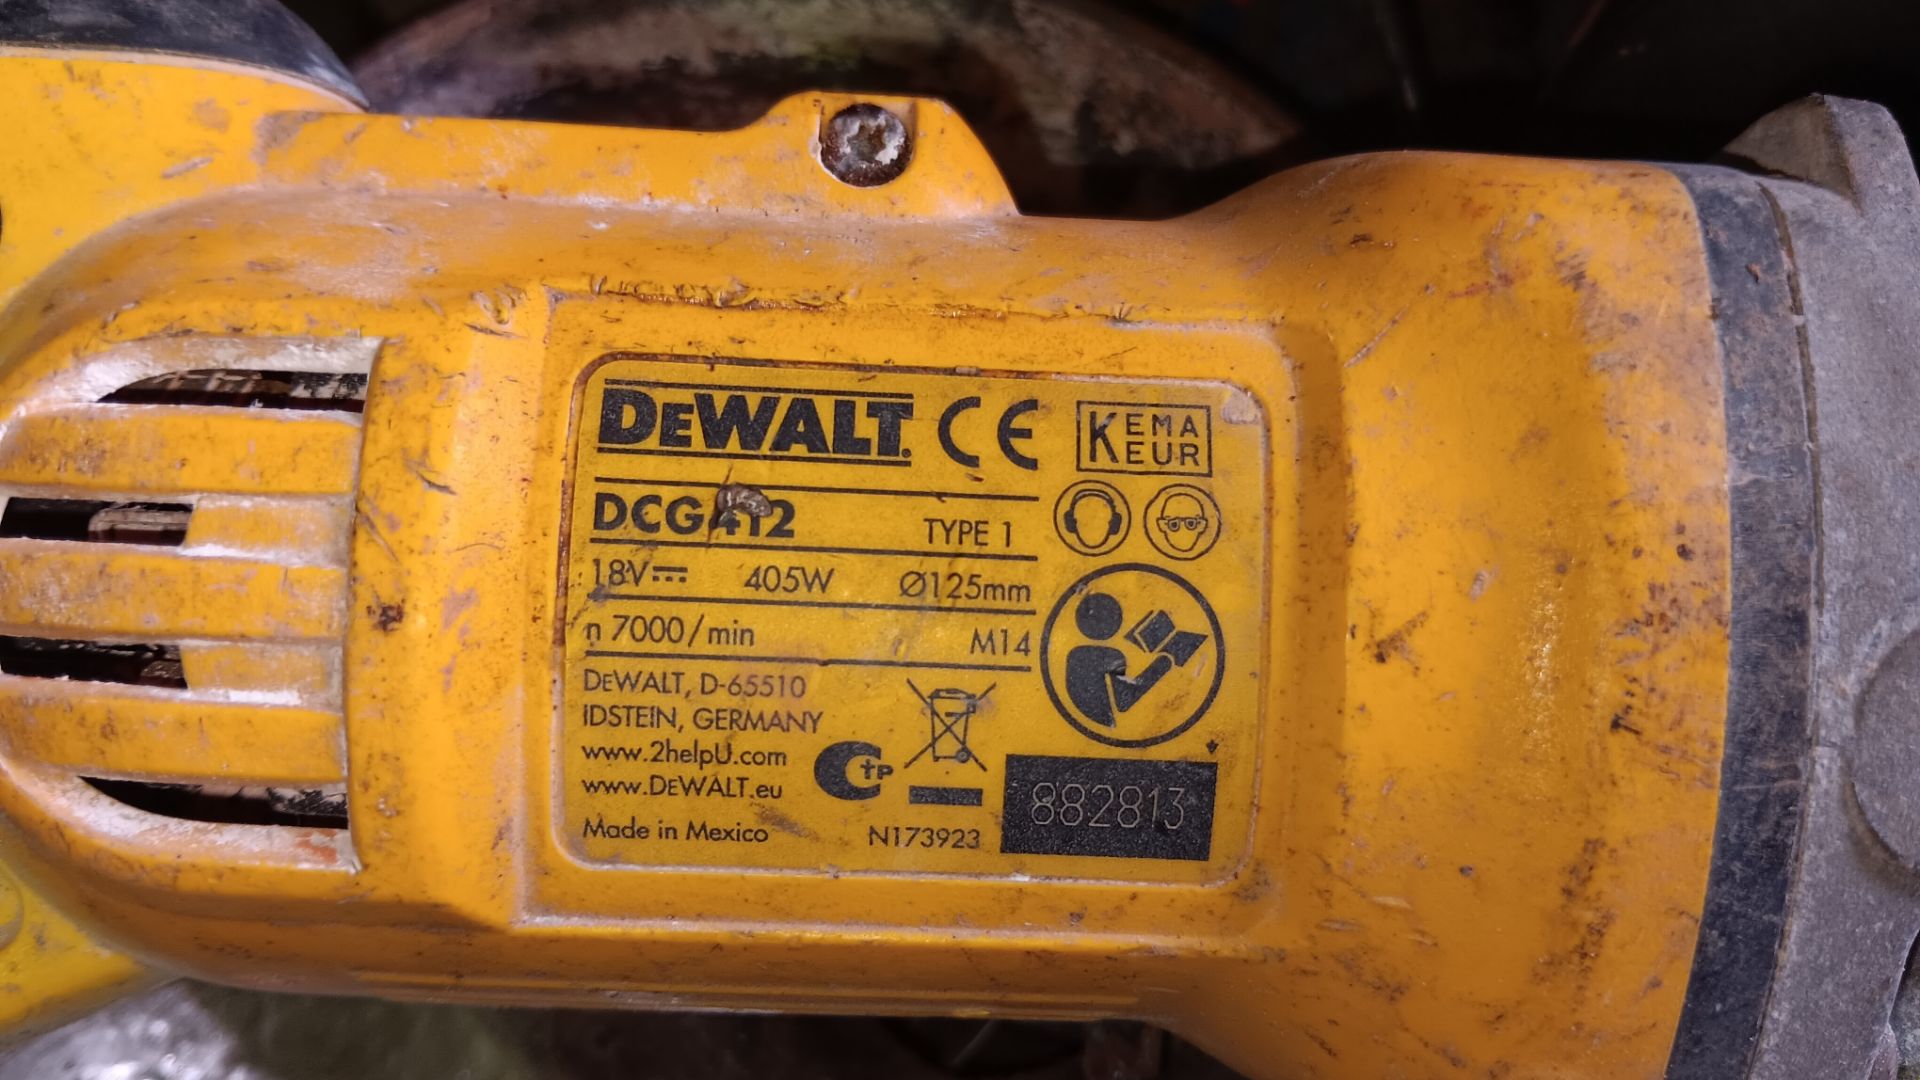 Dewalt DCG412 18v cordless angle grinder, serial number 882813 - Image 5 of 5